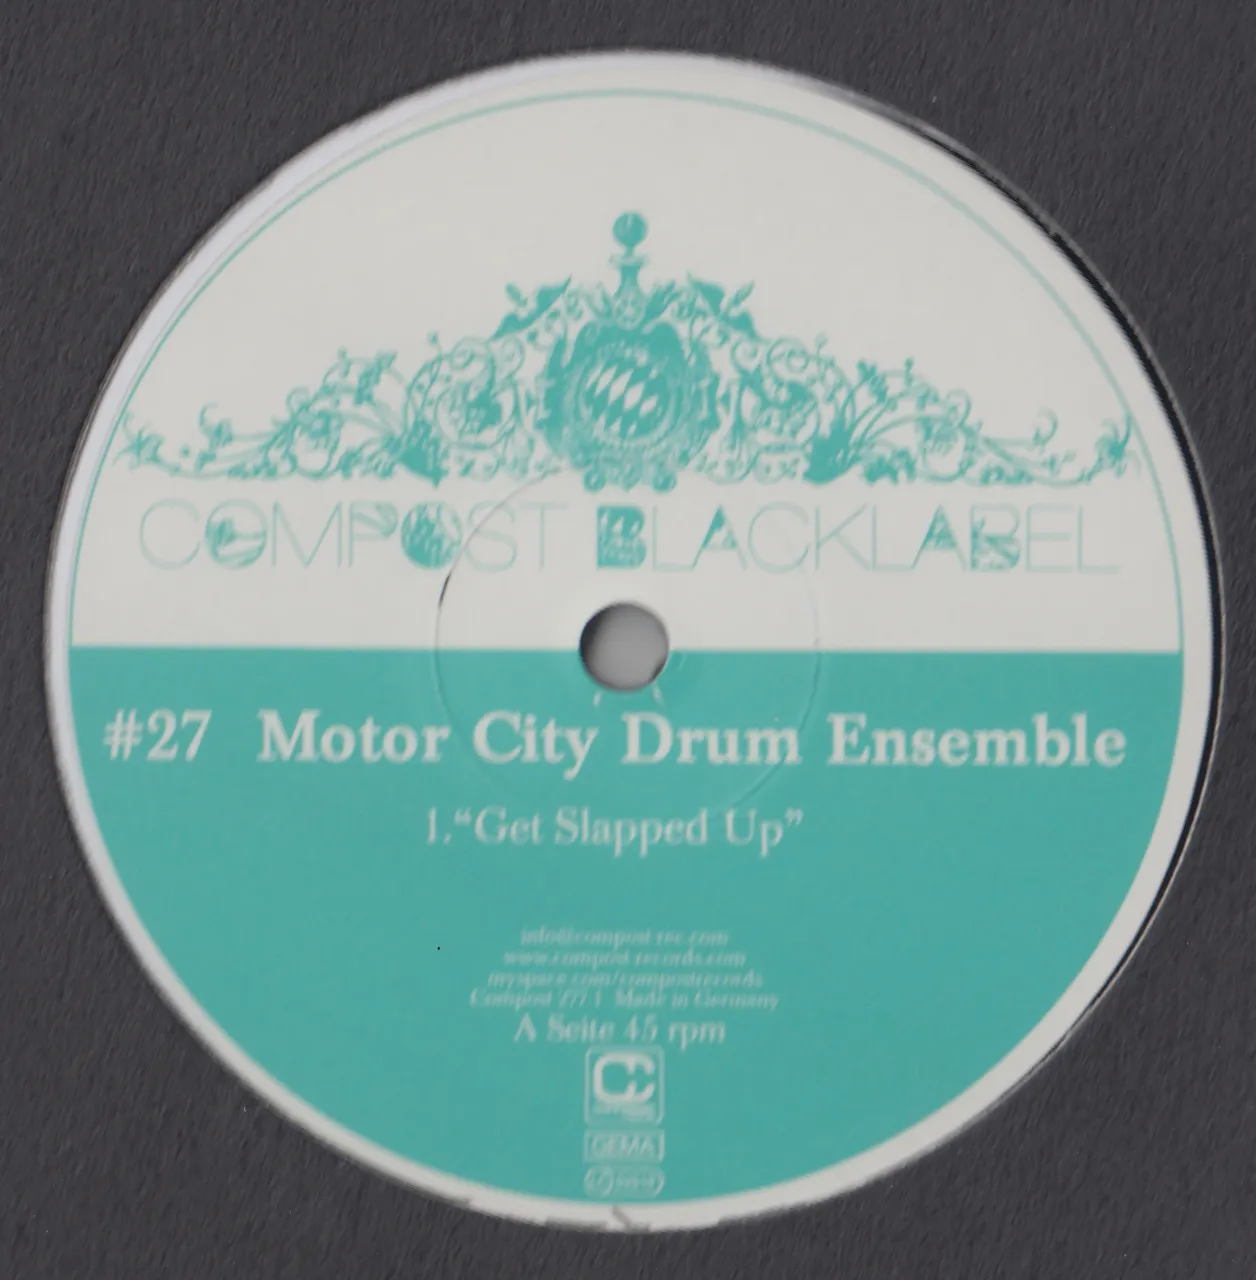 Motor City Drum Ensemble - Compost Black Label 27 : 12inch